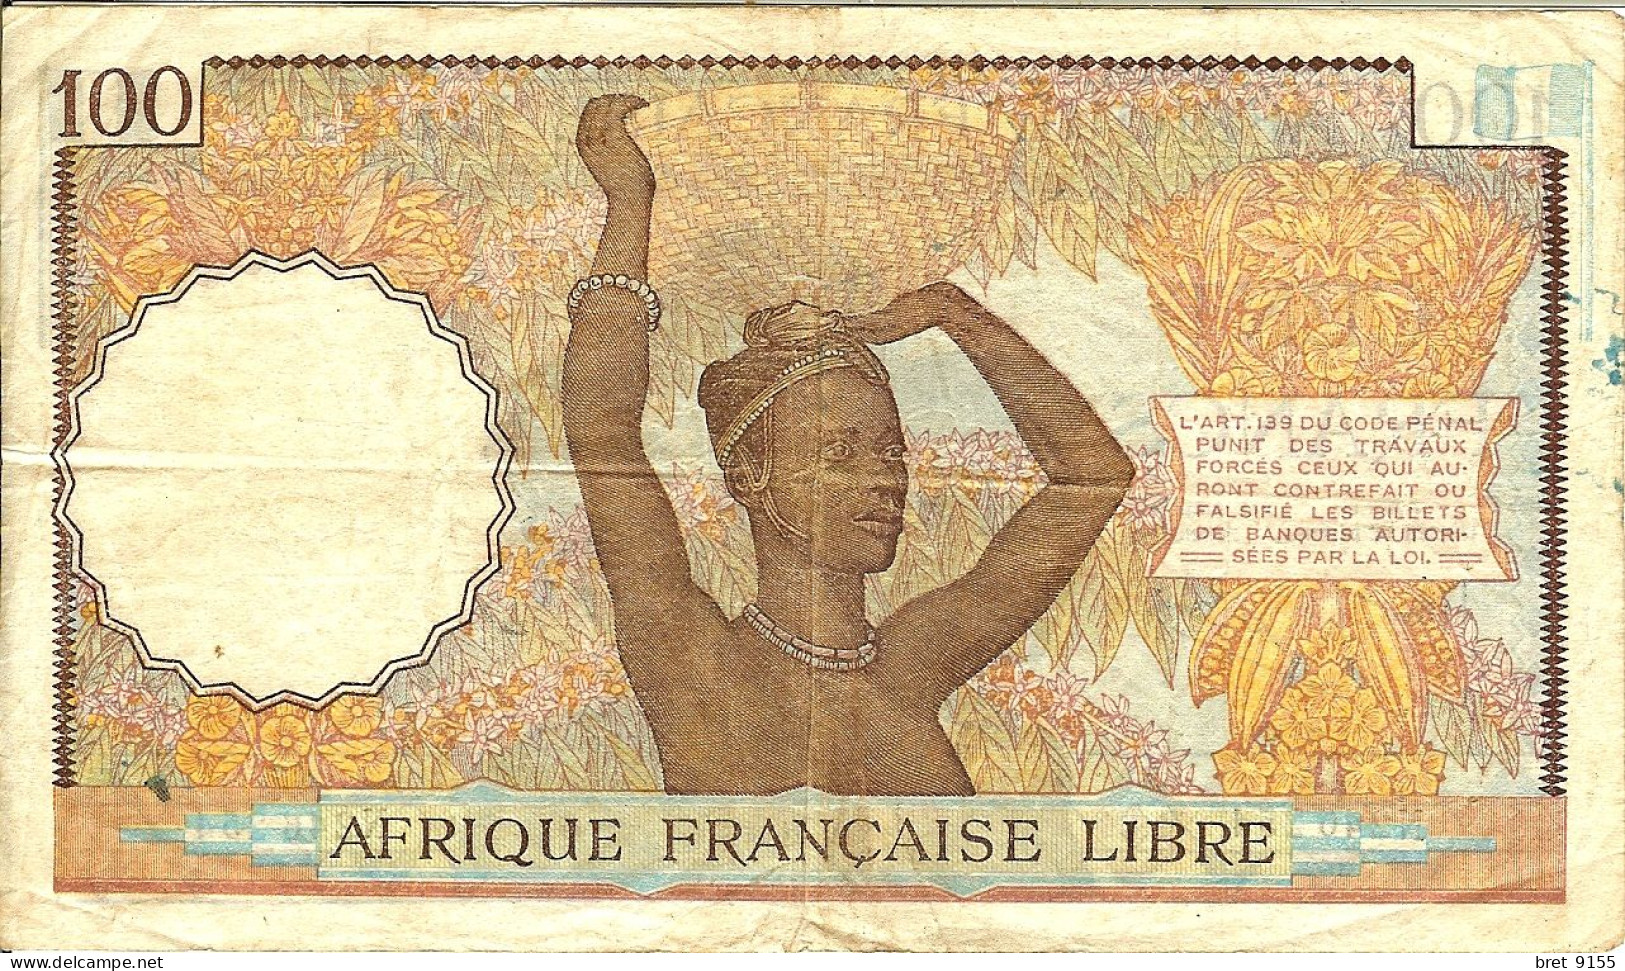 BILLET DE BANQUE AFRIQUE FRANCAISE LIBRE CONGO 100 FRANCS 1941 SERIE N246254 - Suráfrica